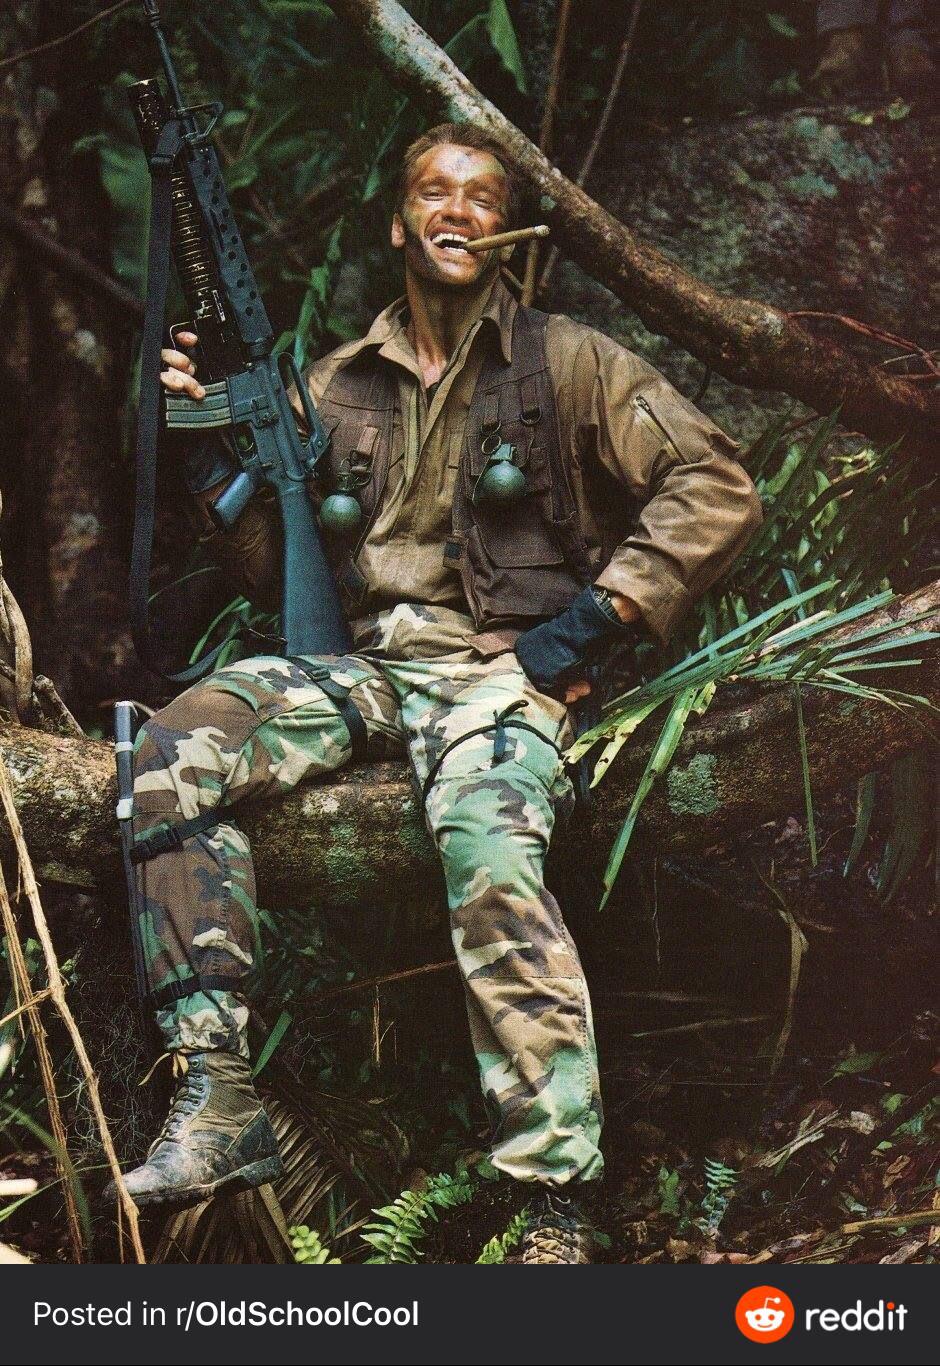 PsBattle: Arnold Schwarzenegger filming for ‘the Predator’ in 1986.